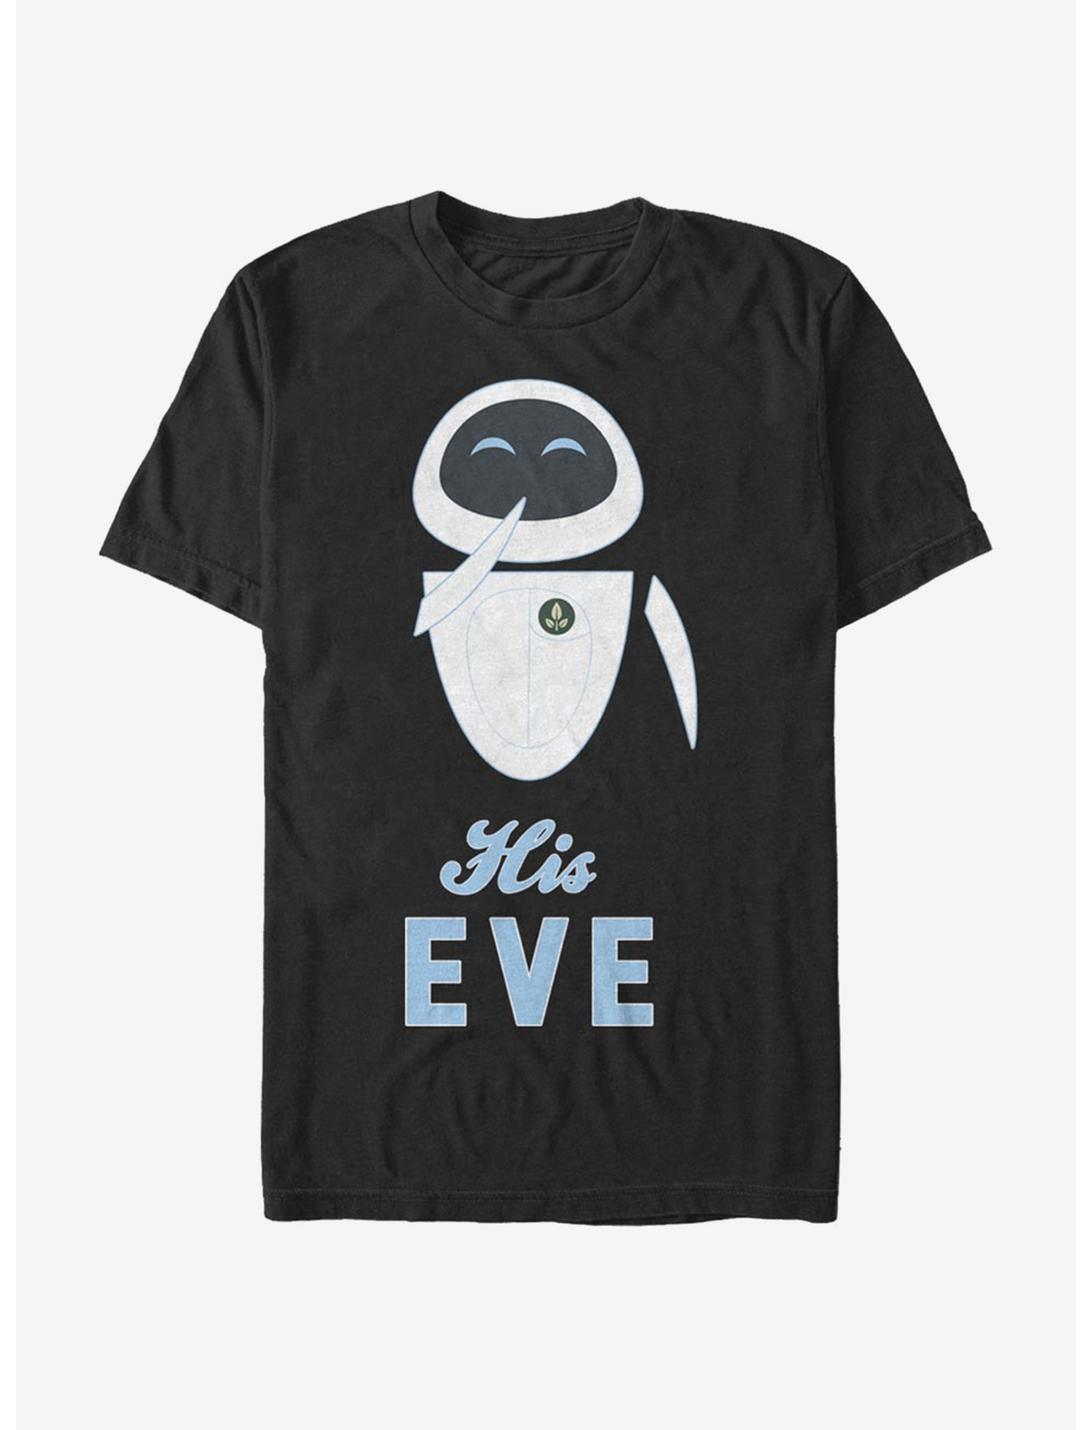 Disney Pixar Wall-E His Eve T-Shirt, BLACK, hi-res